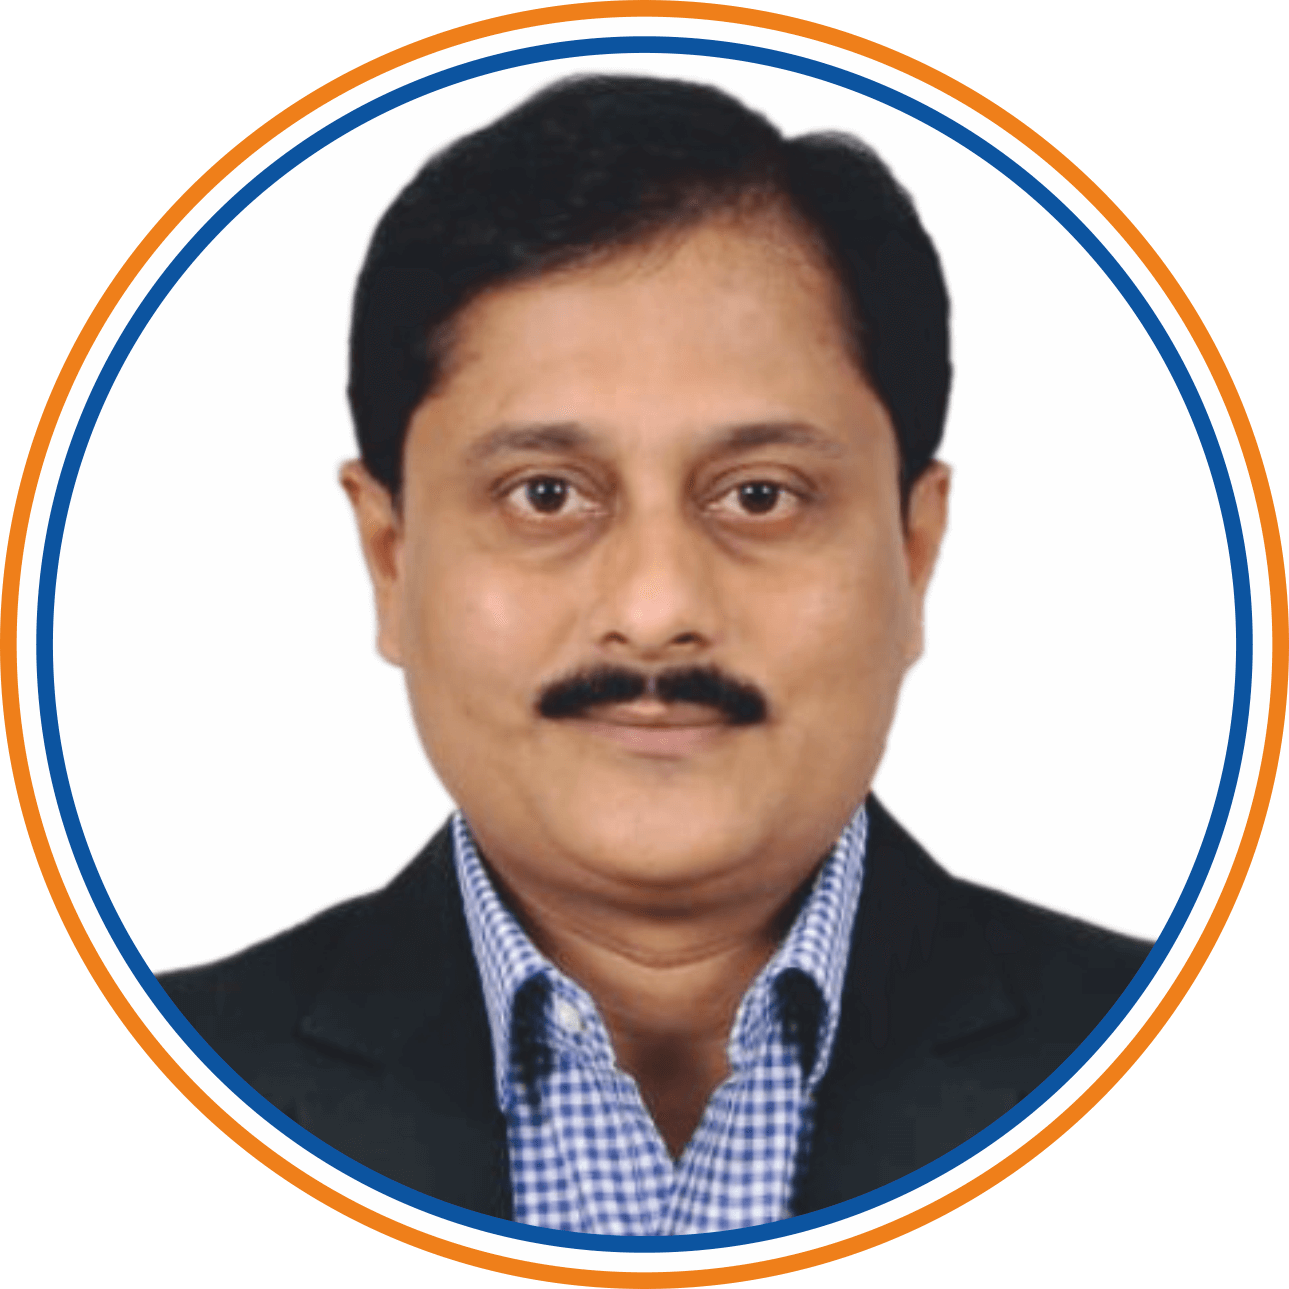 Committee Member Devendra Gandre